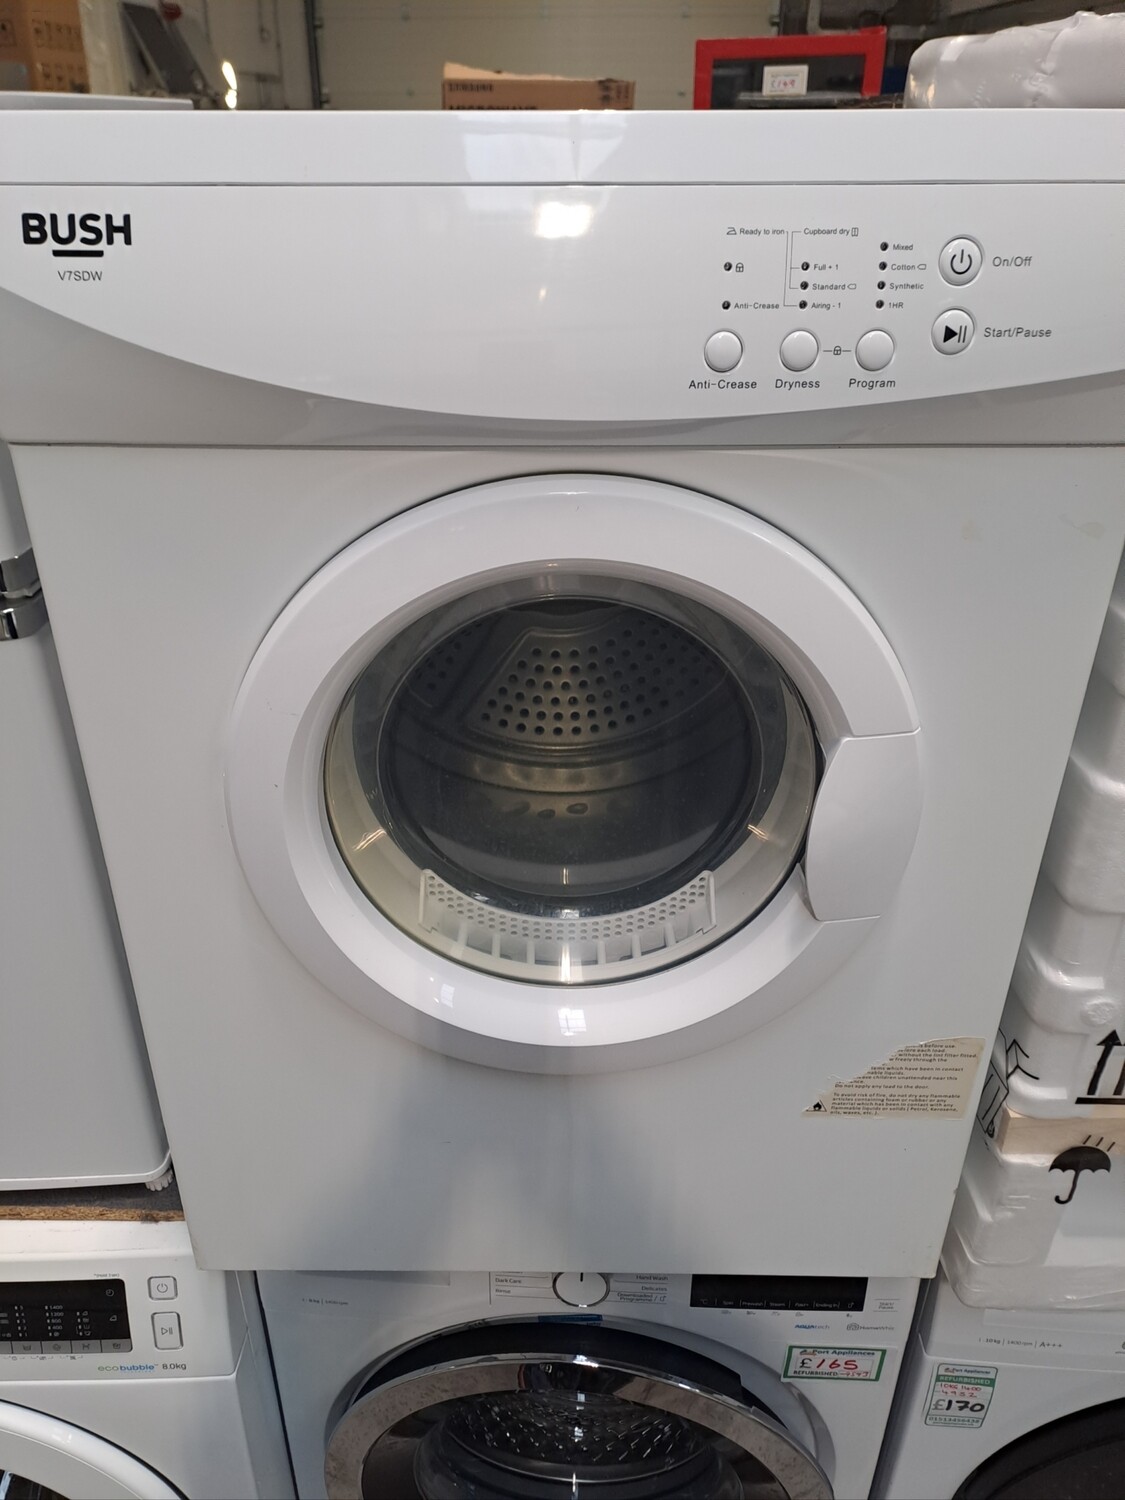 Bush V7SDW 7kg Vented Dryer White Refurbished 6 Months Guarantee